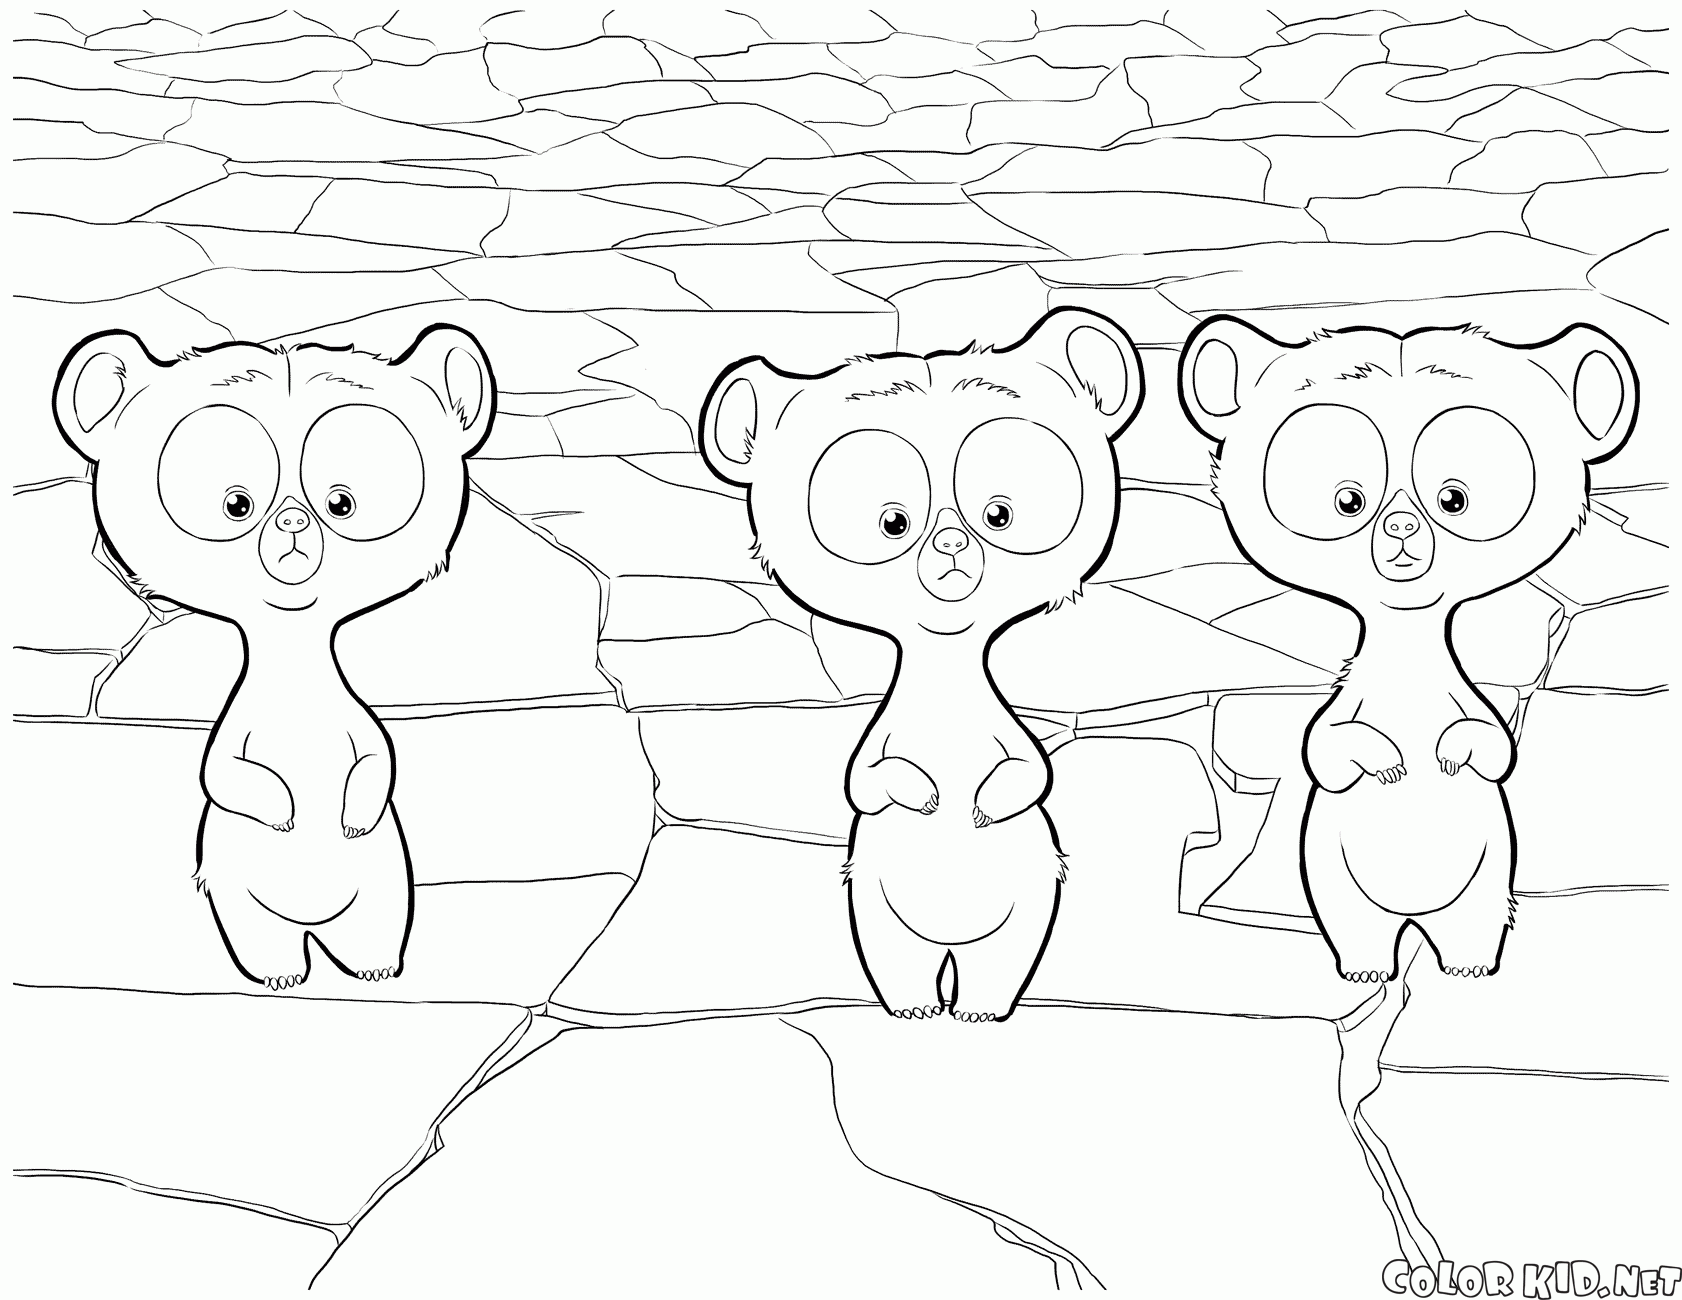 أصبحت ثلاثة توائم اشبال الدب